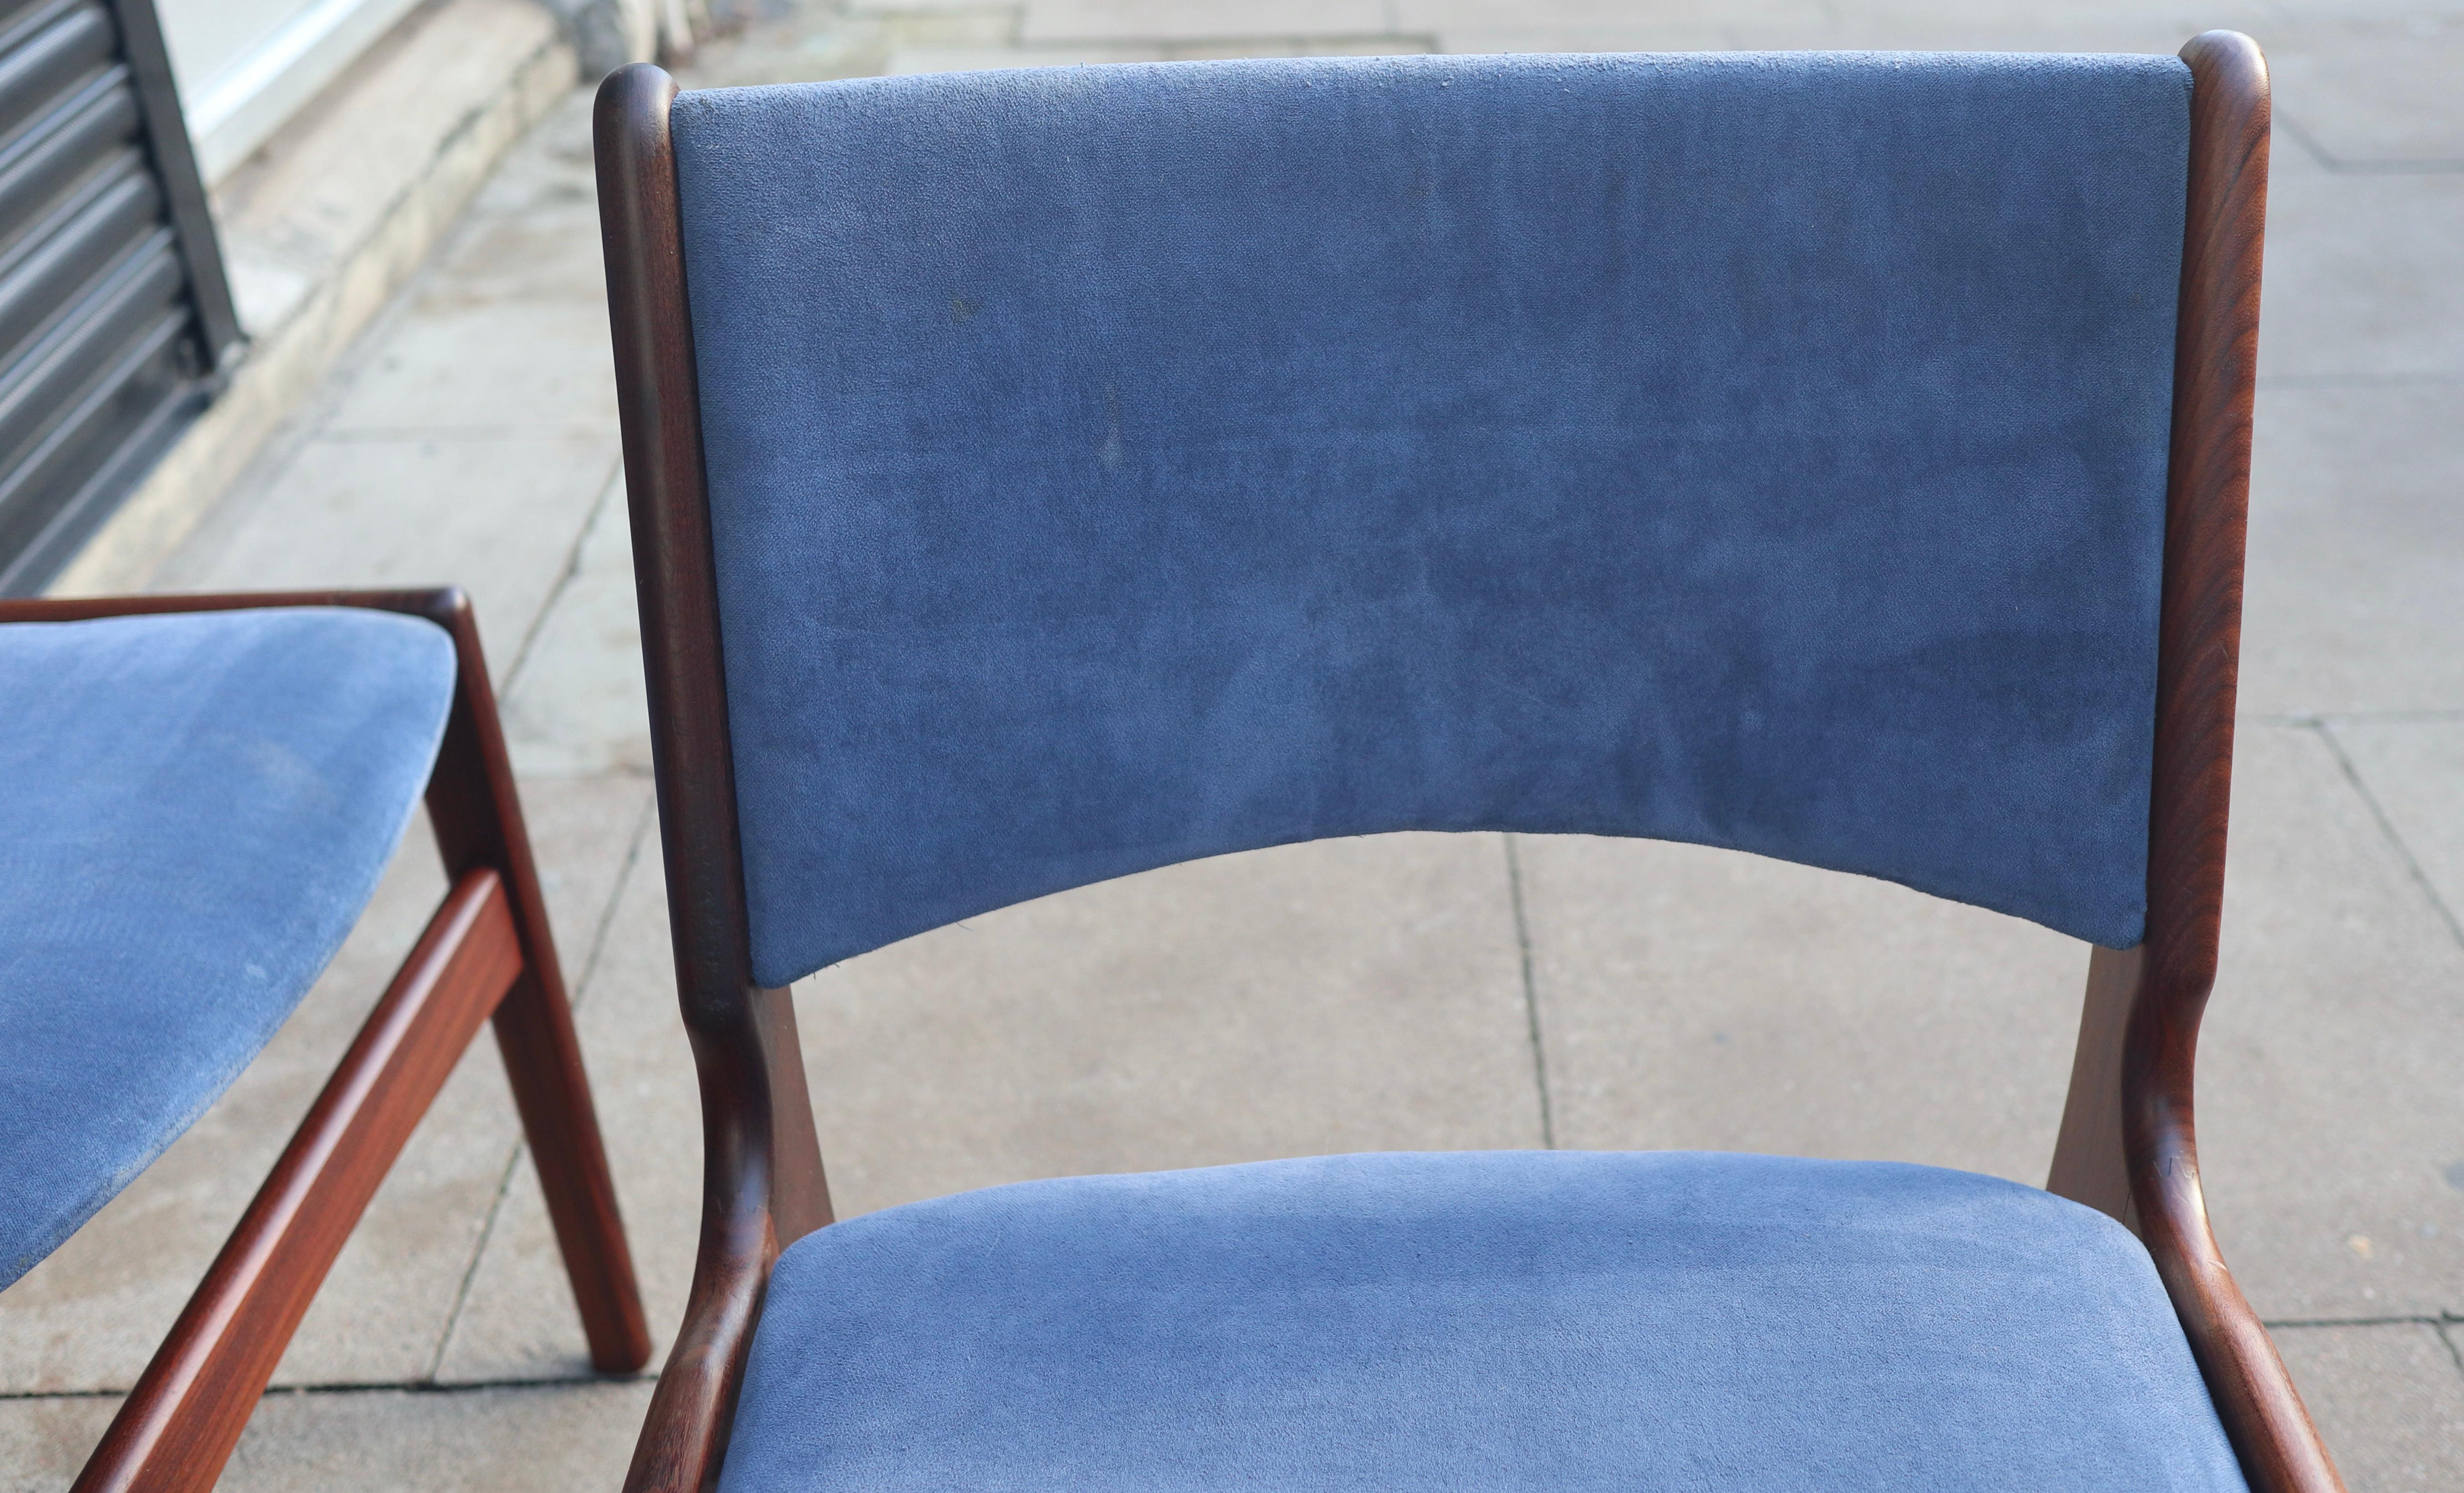 Un ensemble rare et élégant de cinq chaises de salle à manger danoises en teck massif, modèle 89, avec un revêtement textile d'origine de couleur bleu clair.  Conçues par Erik Buch pour povl Dinesen, ces chaises de salle à manger sont dotées d'une